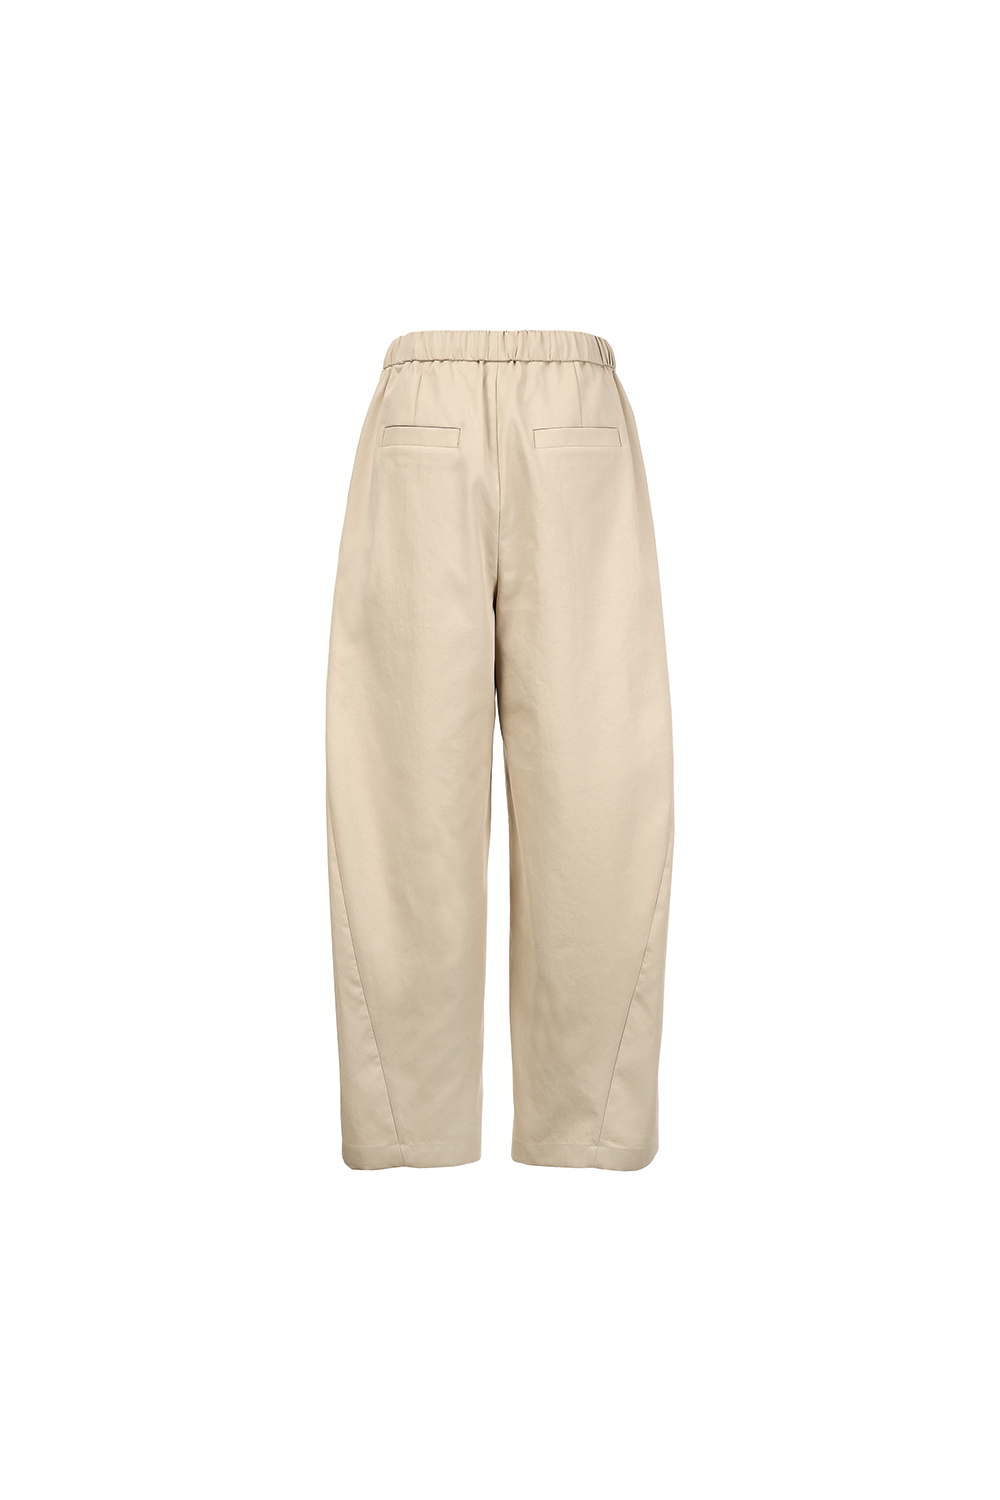 Pants cream color image-S1L37